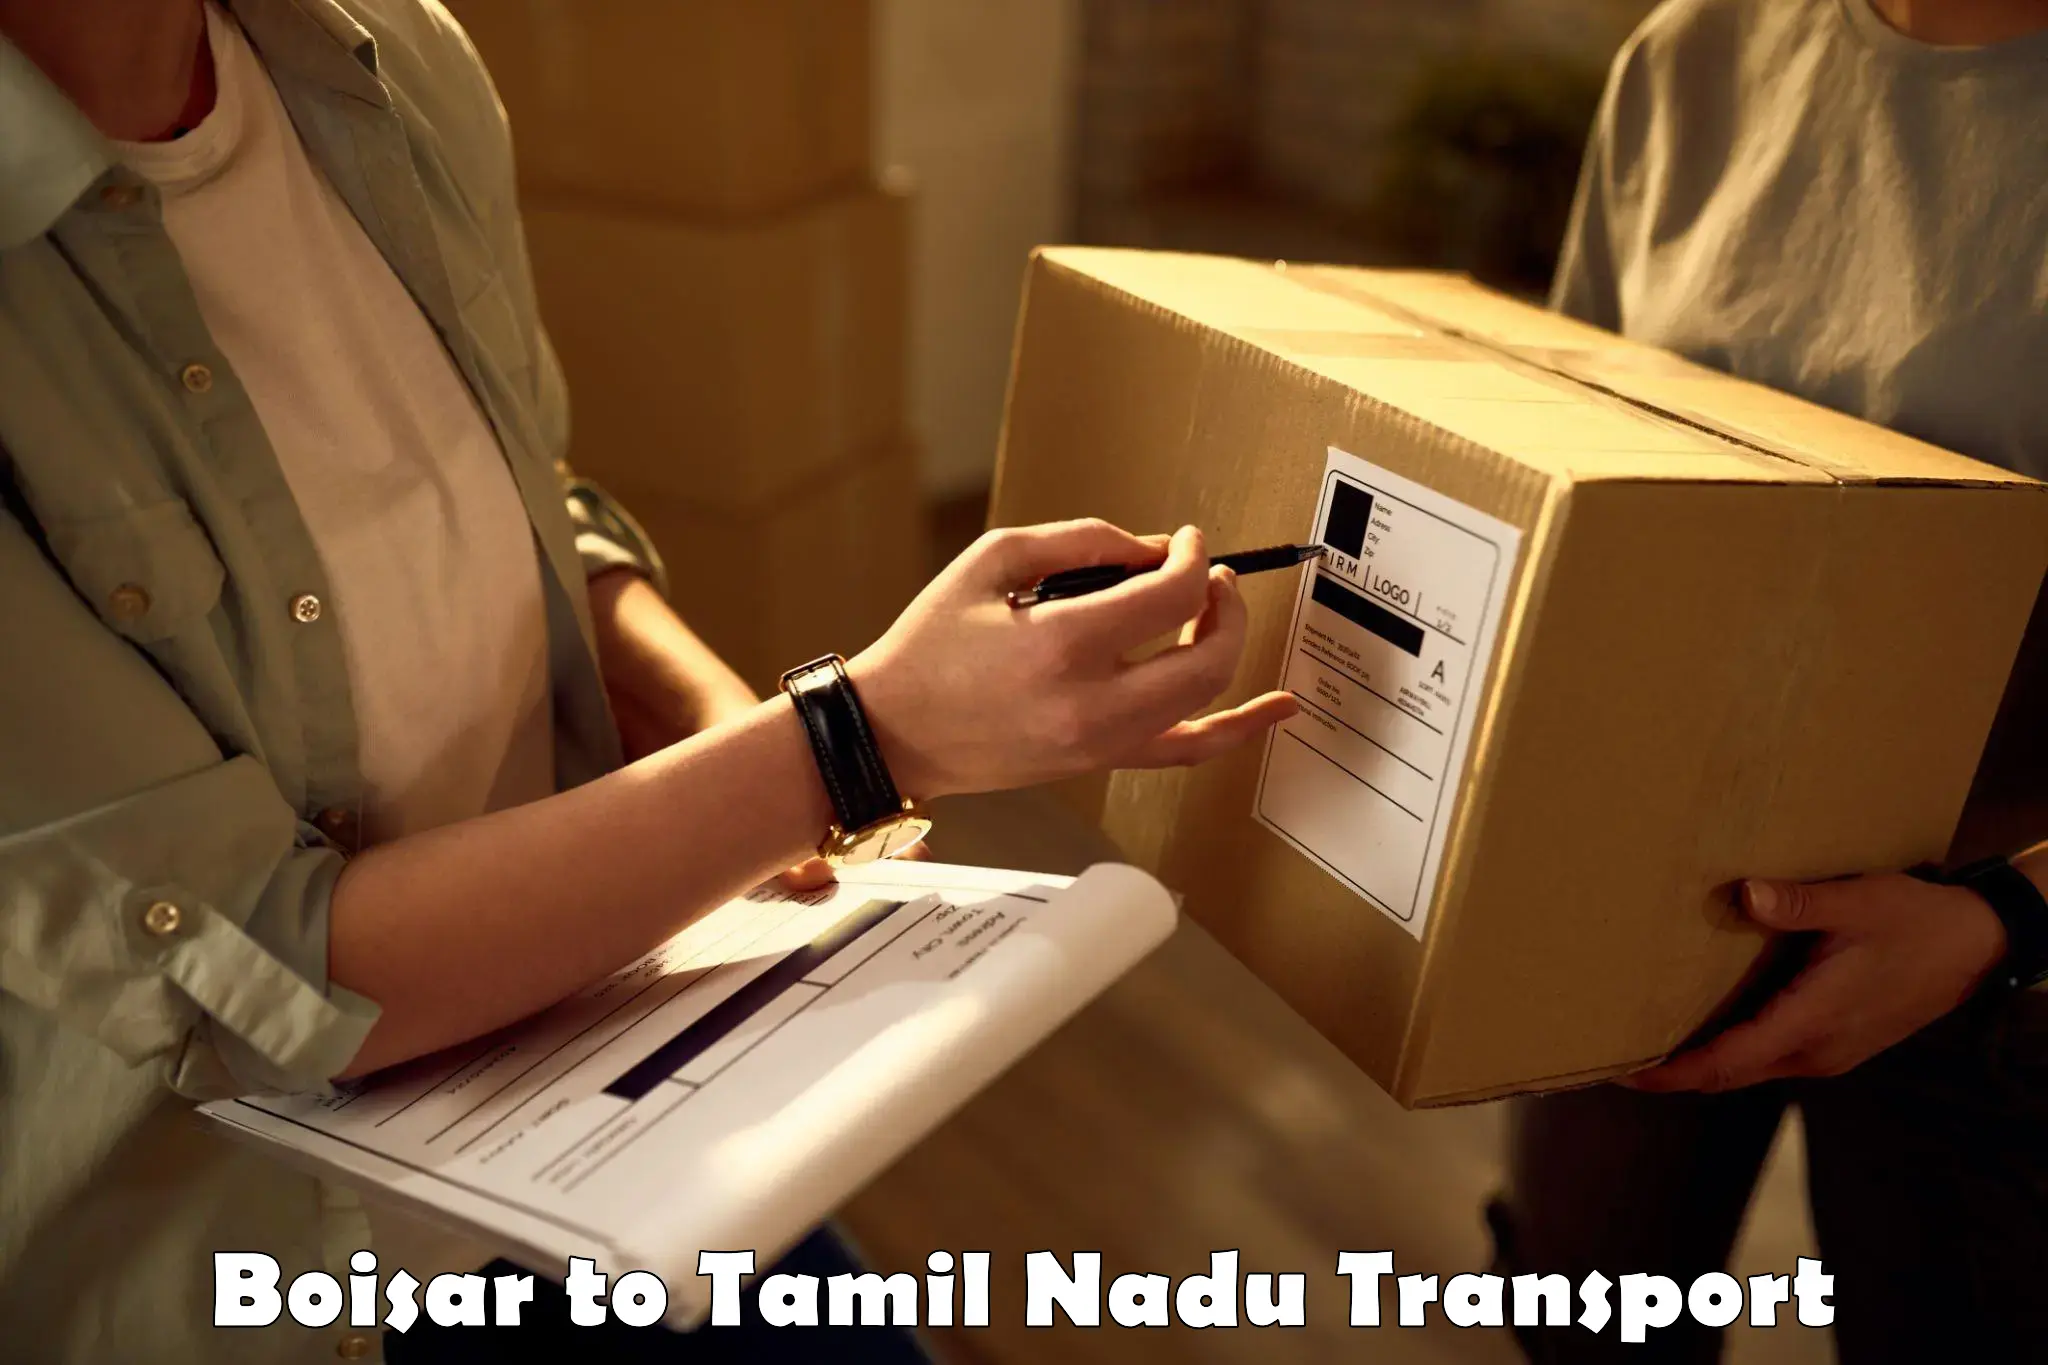 Shipping partner in Boisar to Tamil Nadu